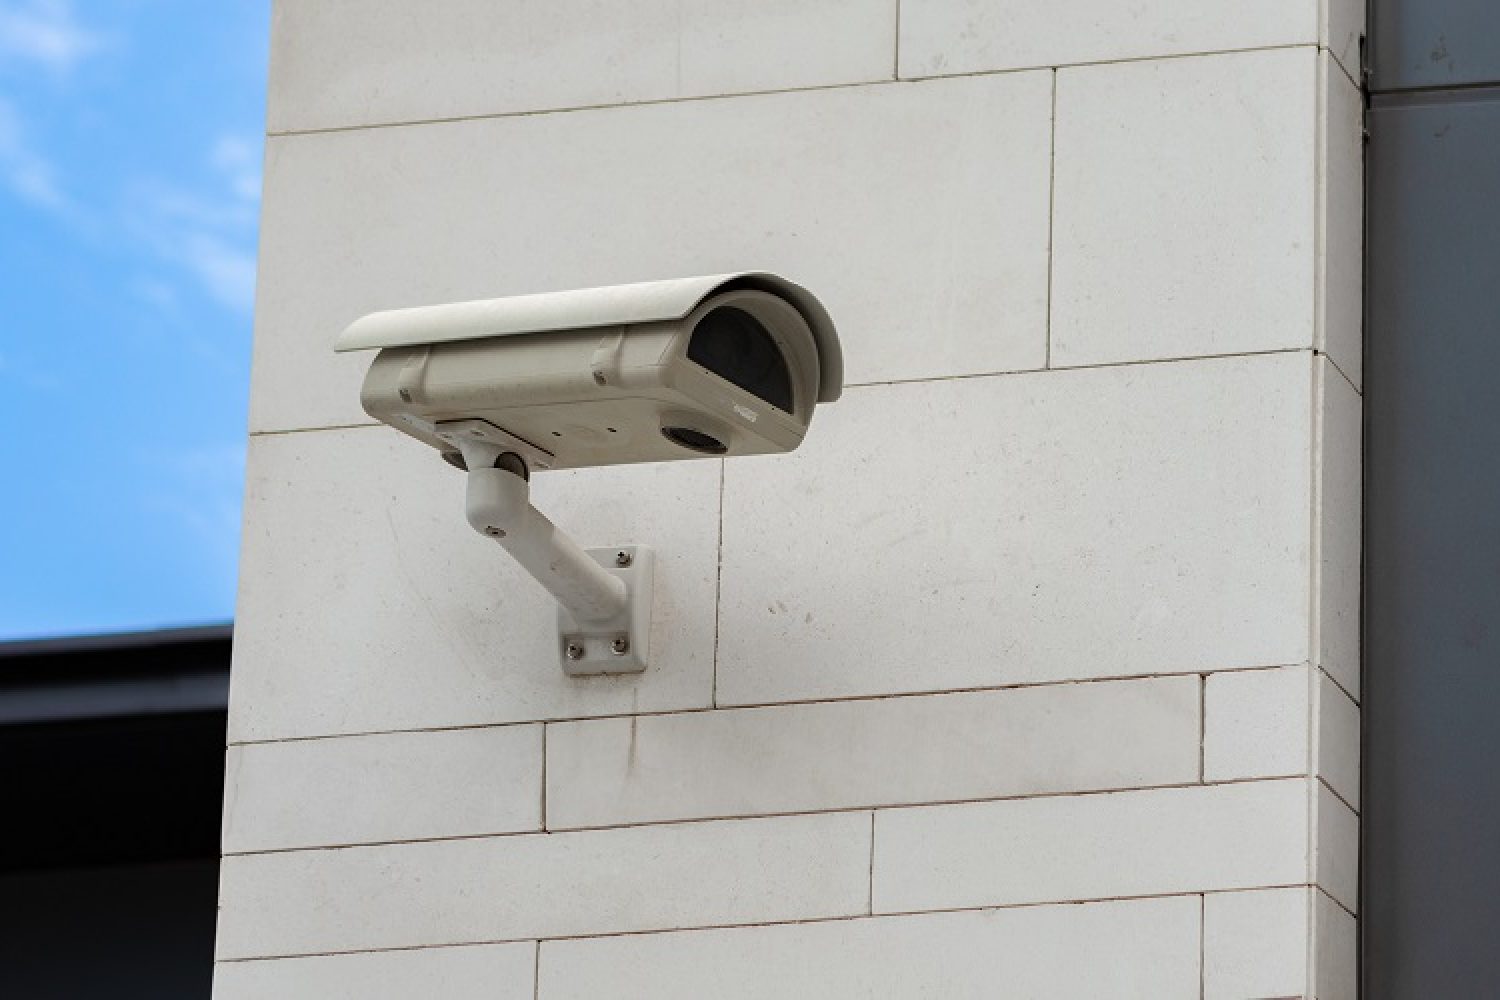 4 P da vigilância patrimonial